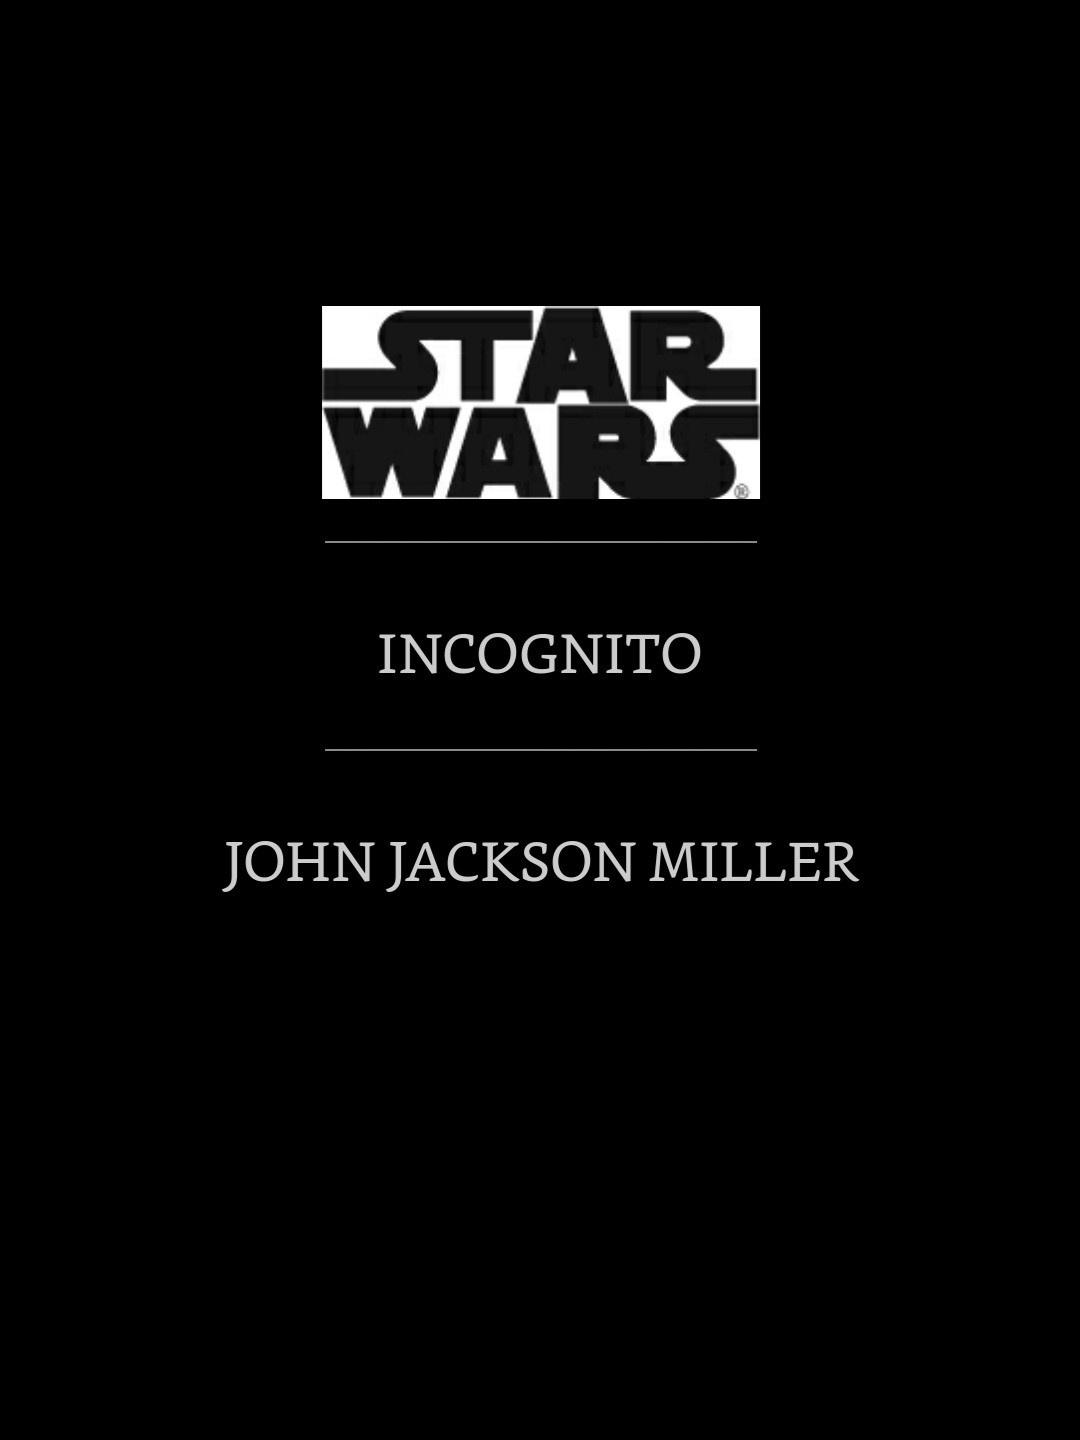 Star Wars: Incognito